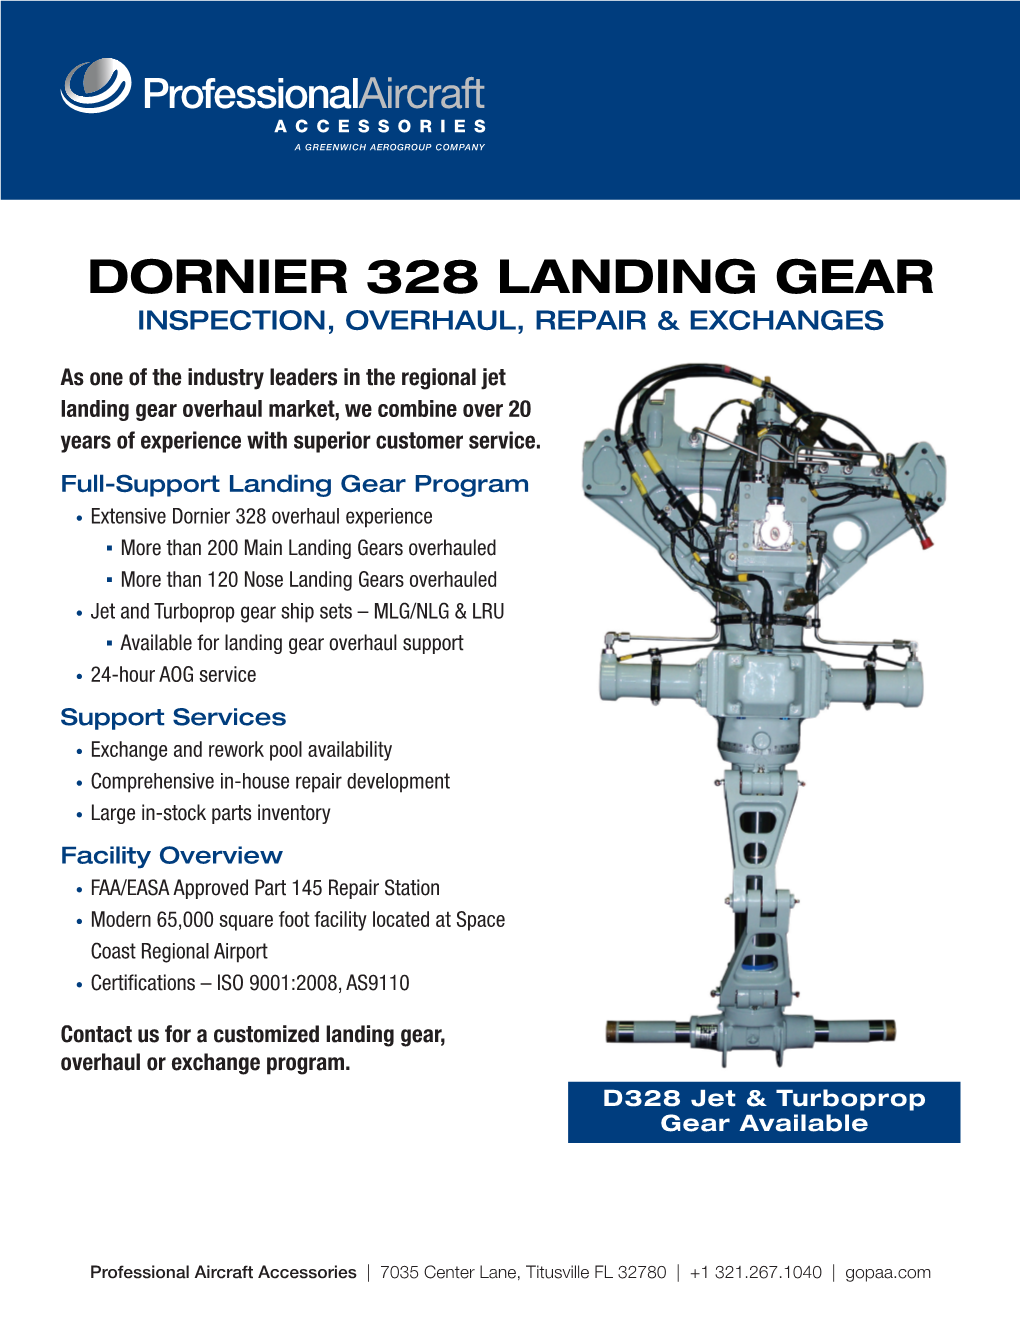 Dornier 328 Landing Gear Inspection, Overhaul, Repair & Exchanges